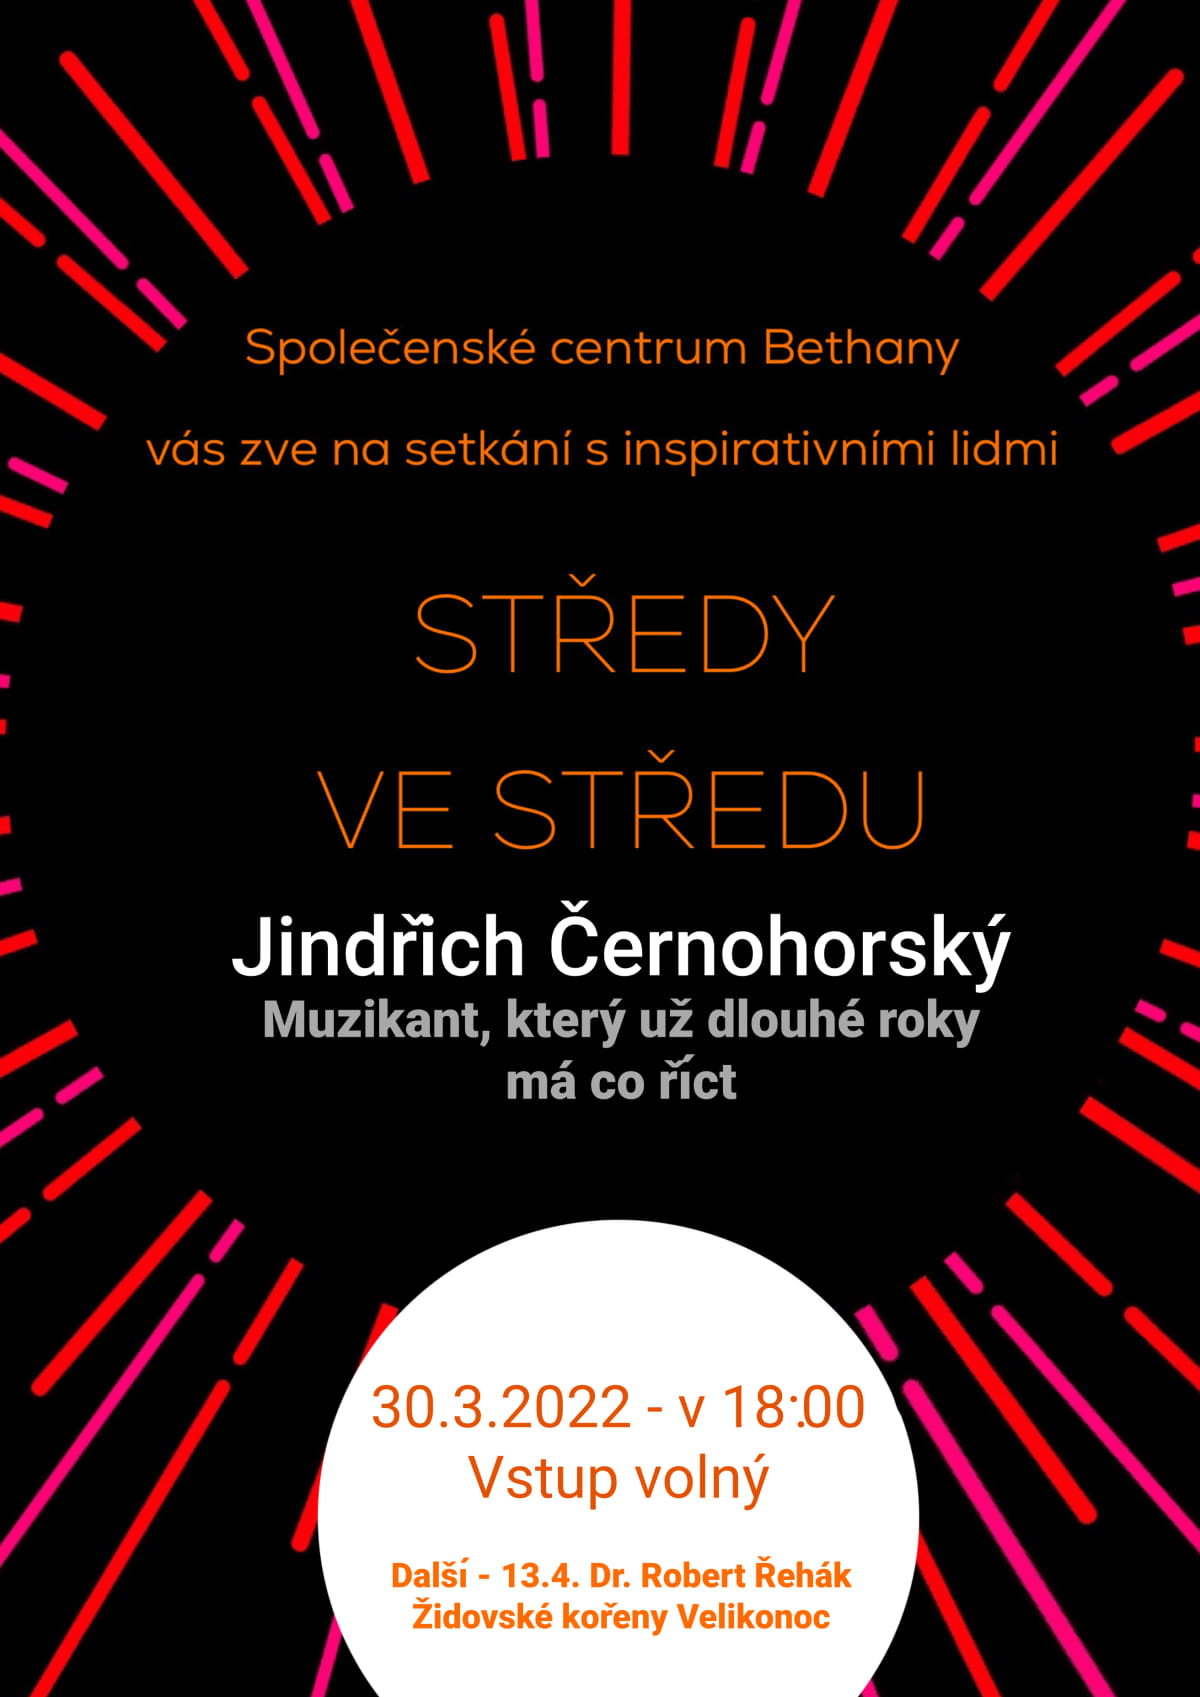 Stredy-ve-stredu-j-cernohorsky1